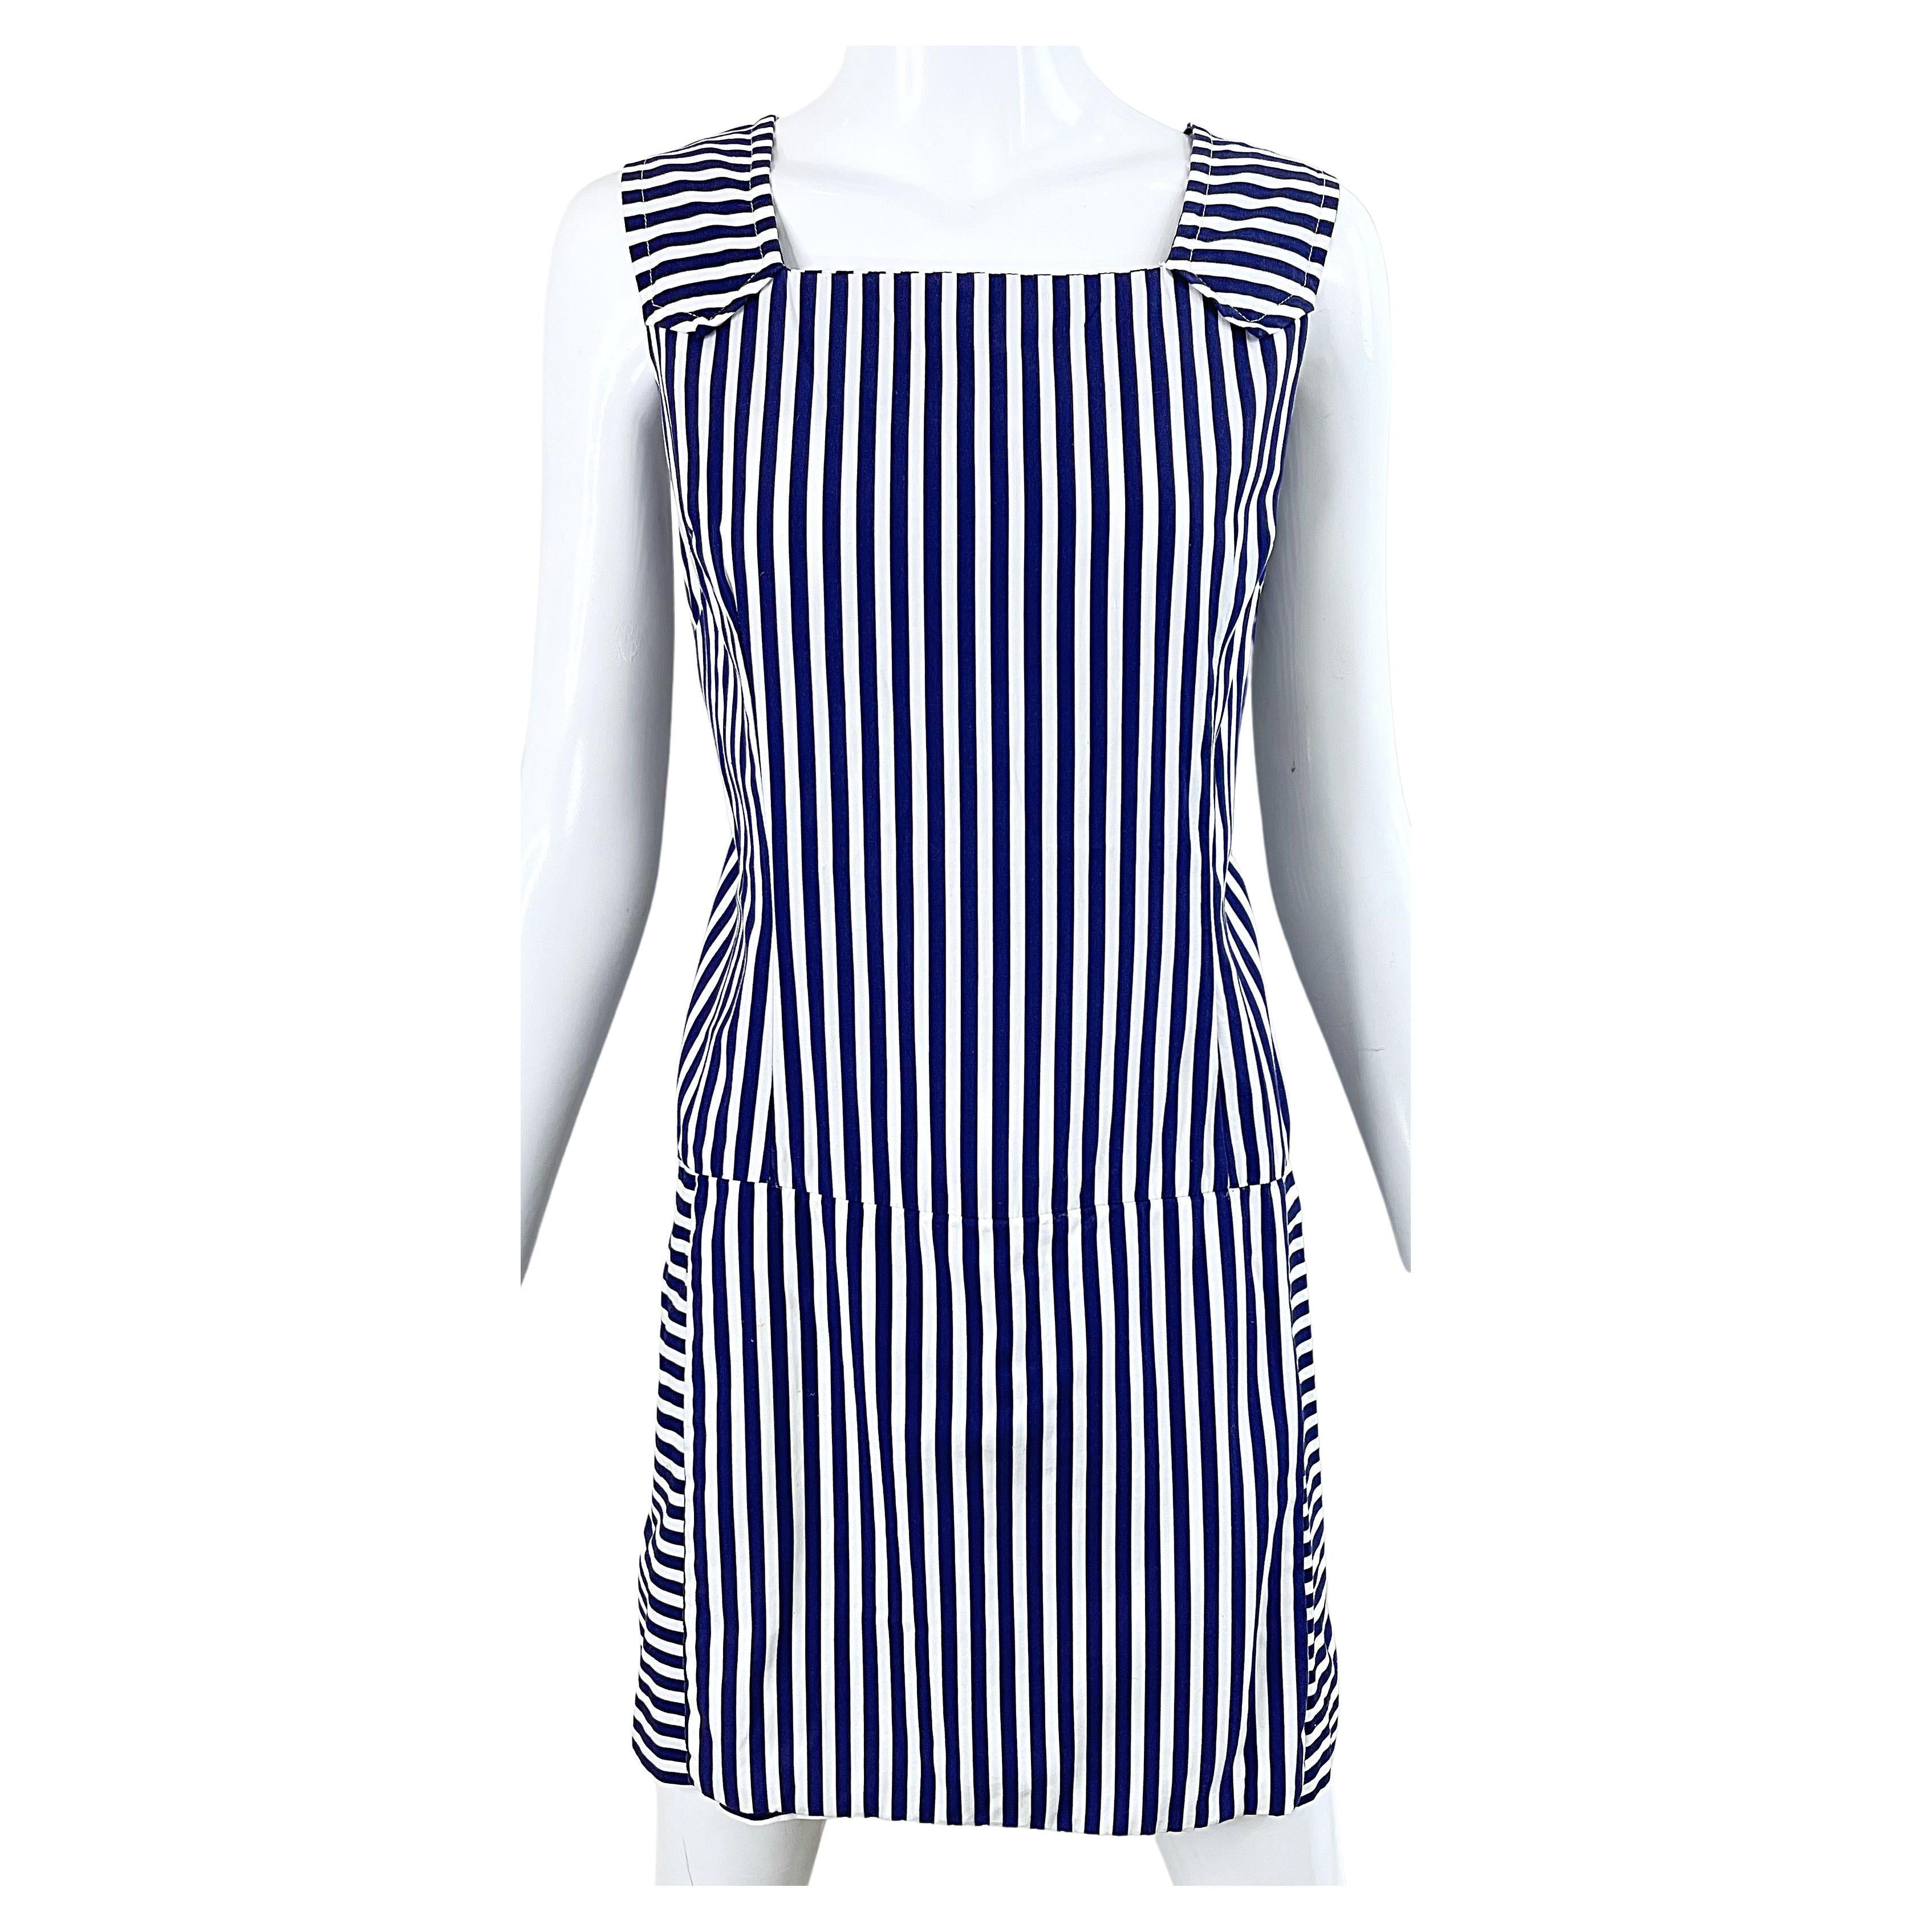 1960er Jahre Romper Große Größe Marine + weiß gestreiften Baumwolle Vintage 60s Skort Kleid